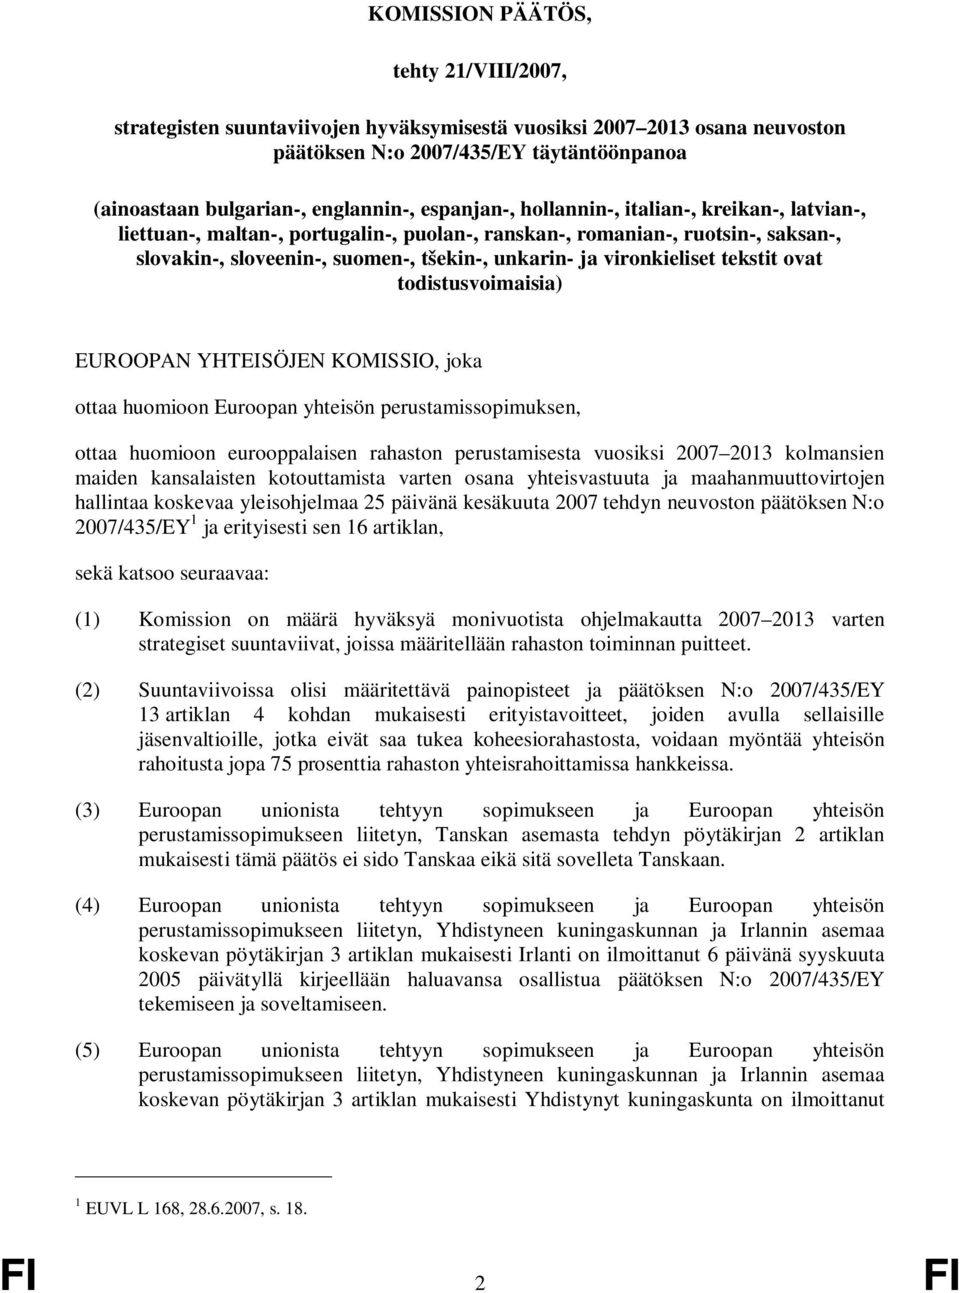 vironkieliset tekstit ovat todistusvoimaisia) EUROOPAN YHTEISÖJEN KOMISSIO, joka ottaa huomioon Euroopan yhteisön perustamissopimuksen, ottaa huomioon eurooppalaisen rahaston perustamisesta vuosiksi